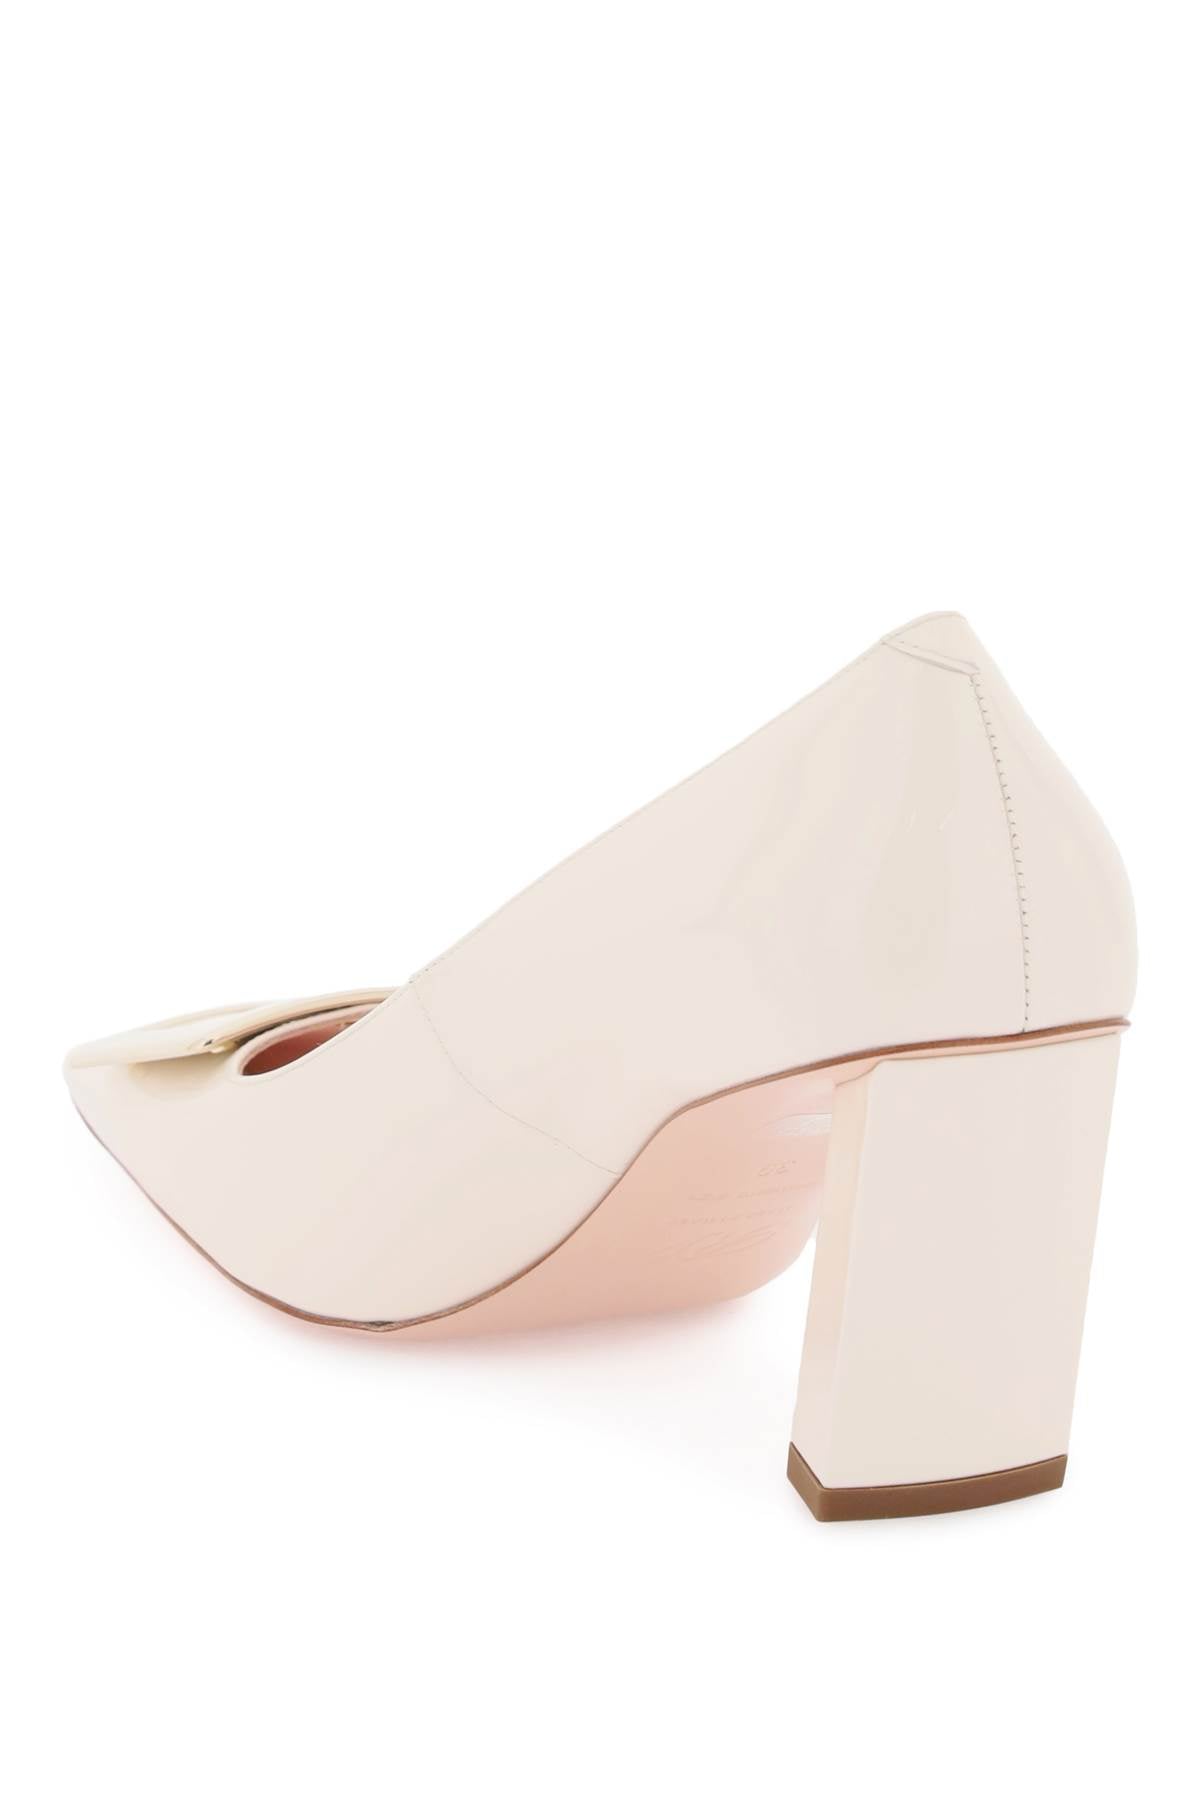 白色正方形Toe白色专利皮革高跟鞋，配有金属方形扣和7.5cm的高跟鞋